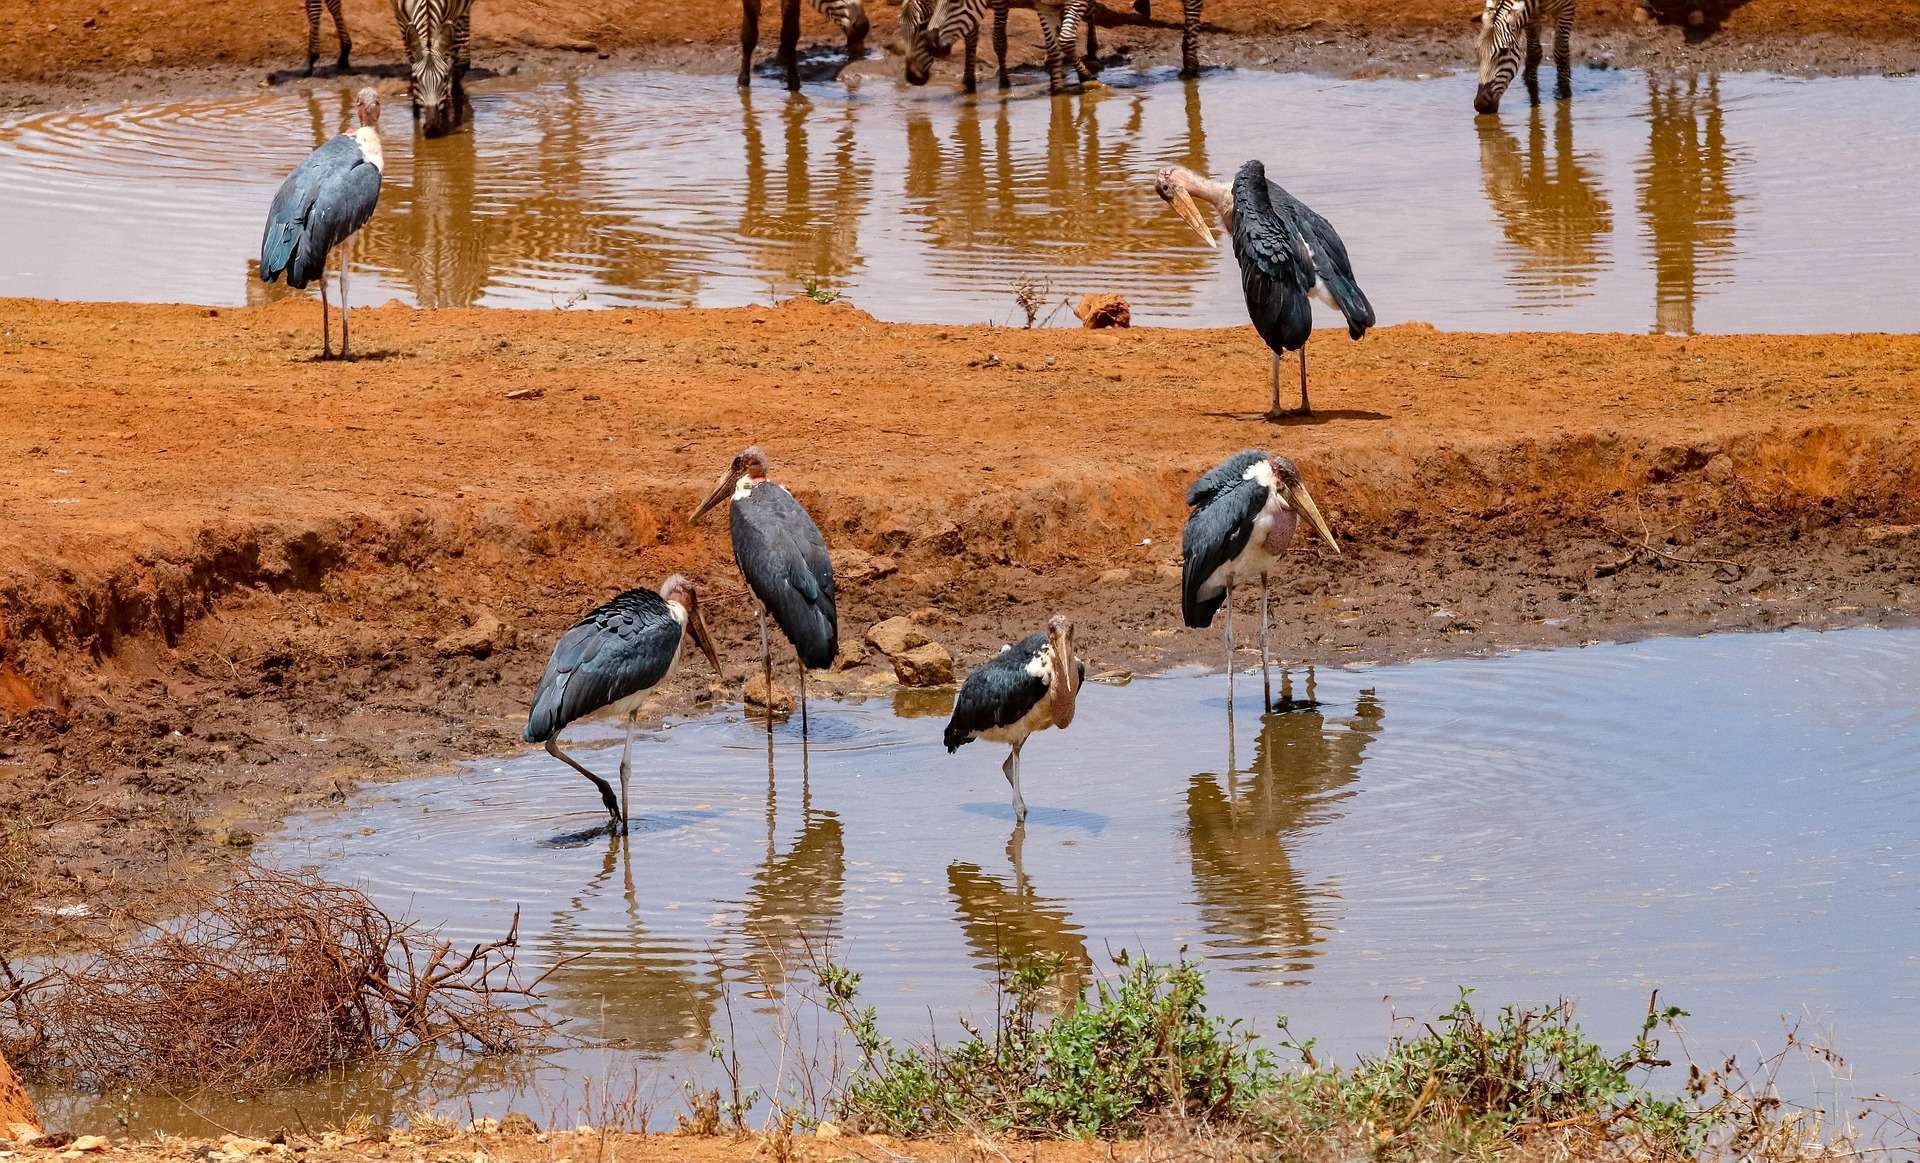 Bird watching safari in Kenya